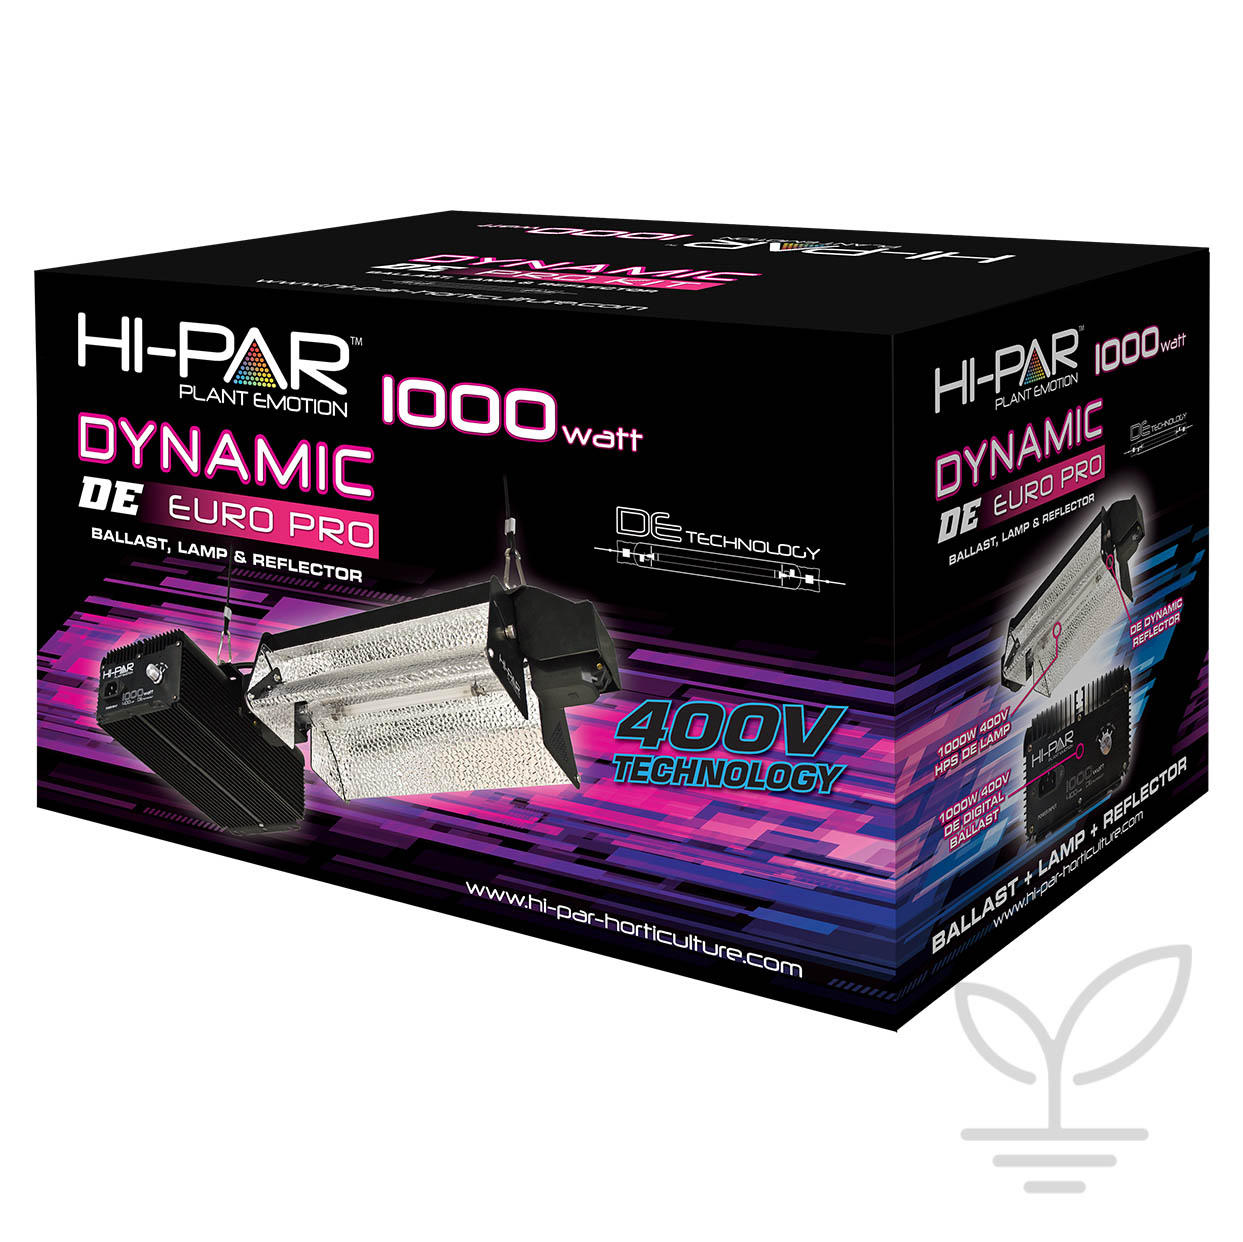 HI-PAR Dynamic DE 1000w Control Kit